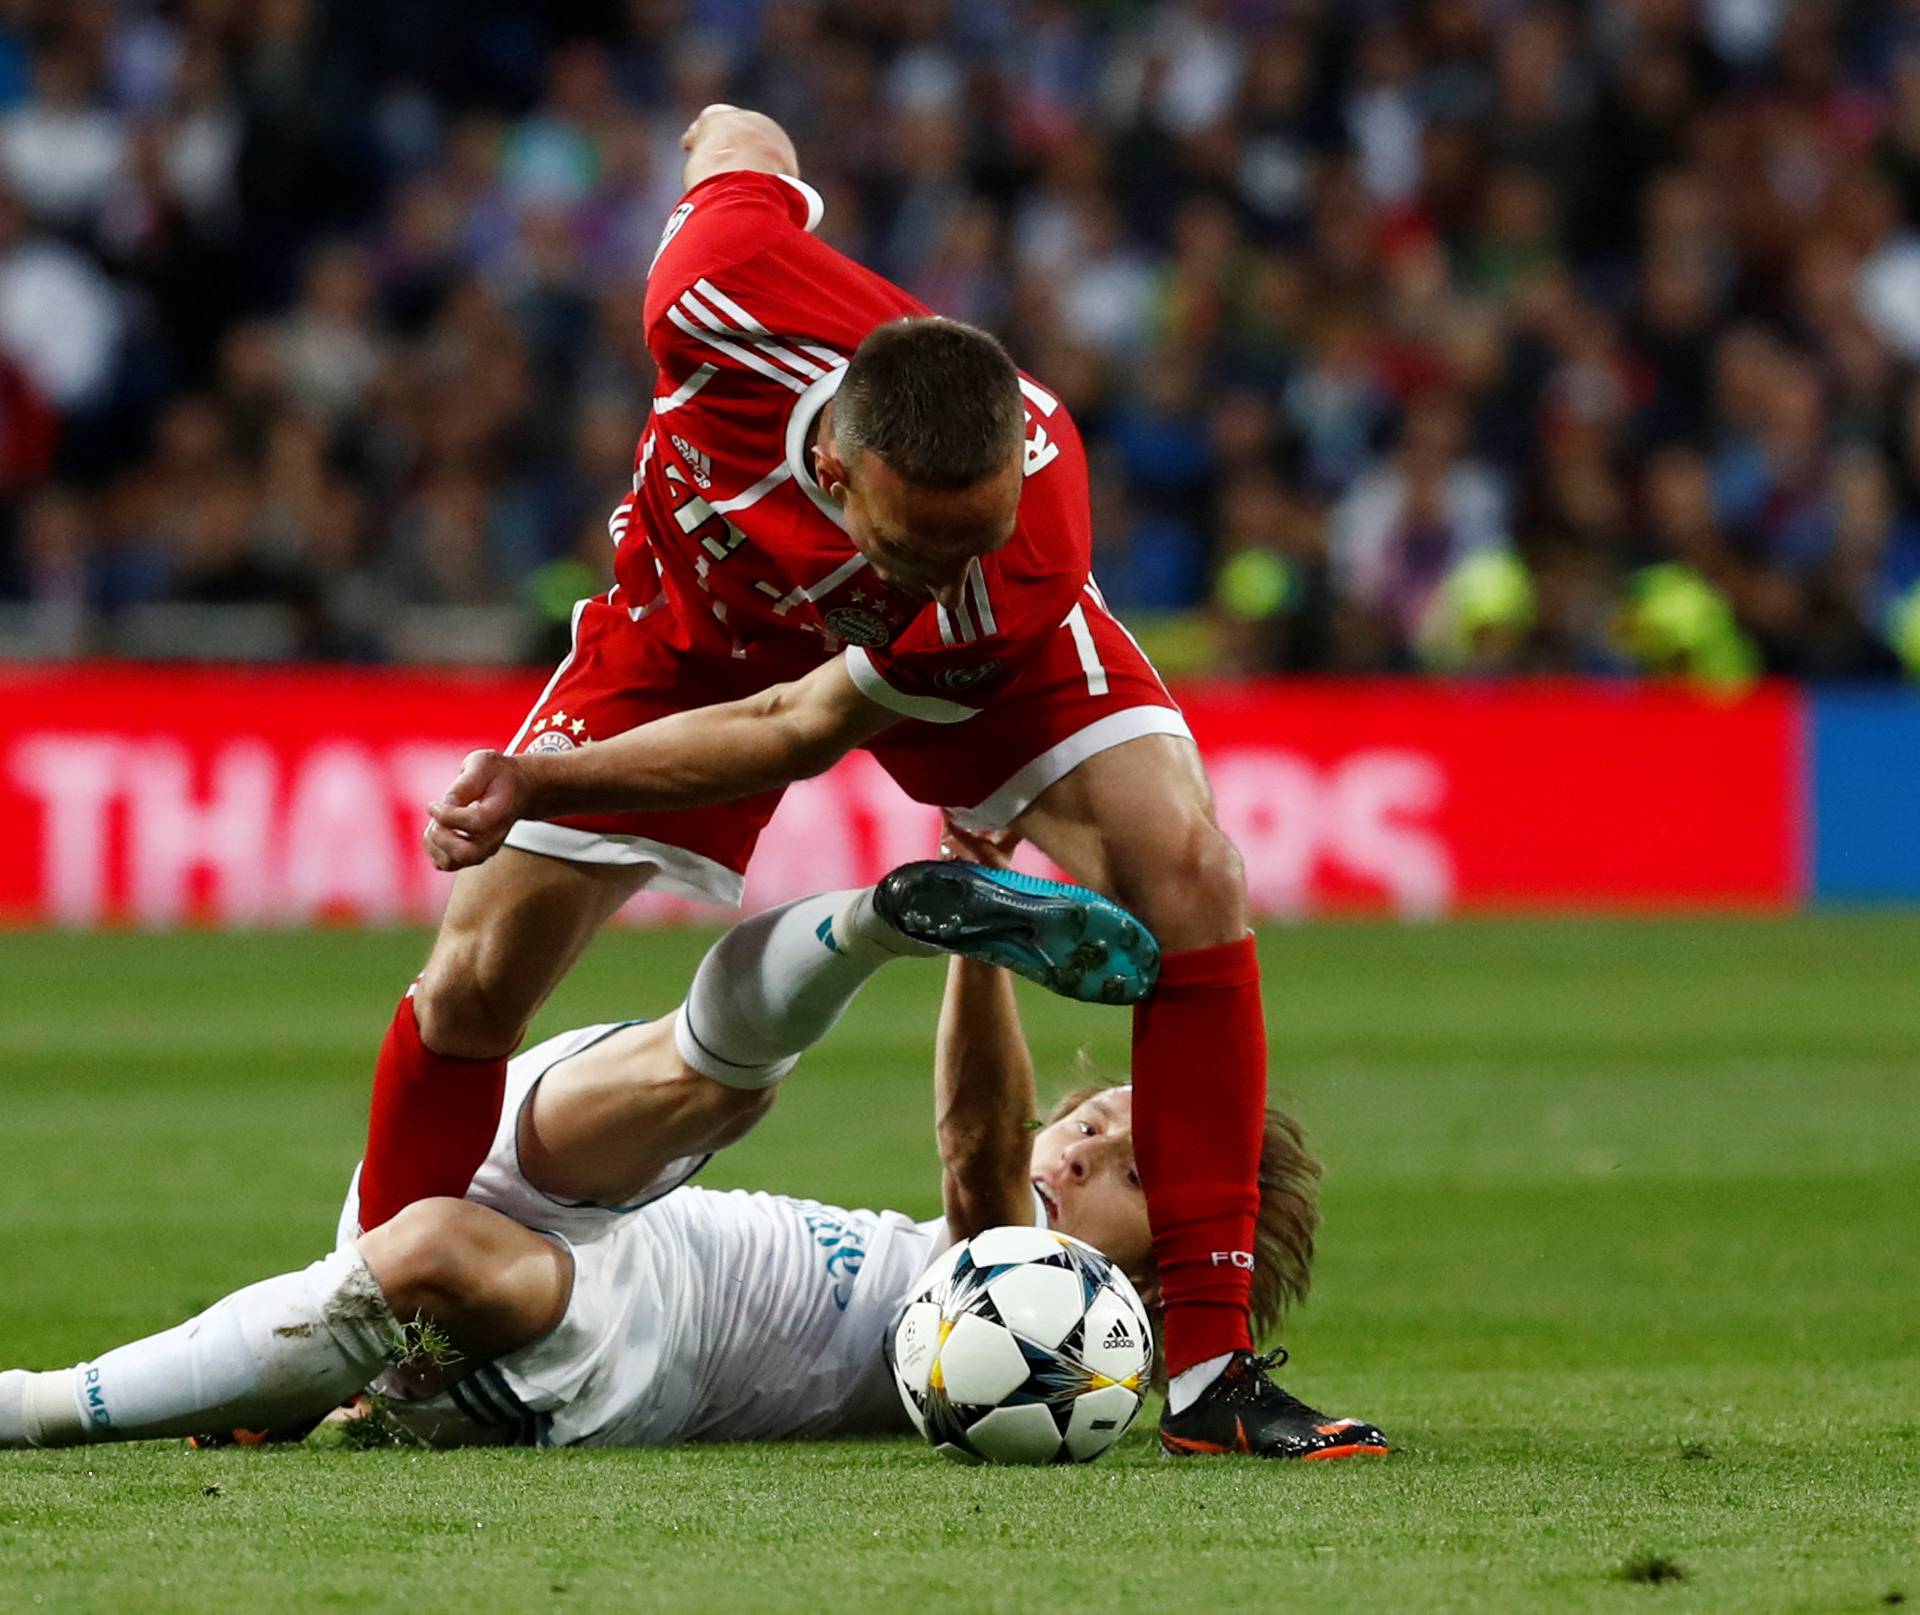 Champions League Semi Final Second Leg - Real Madrid v Bayern Munich